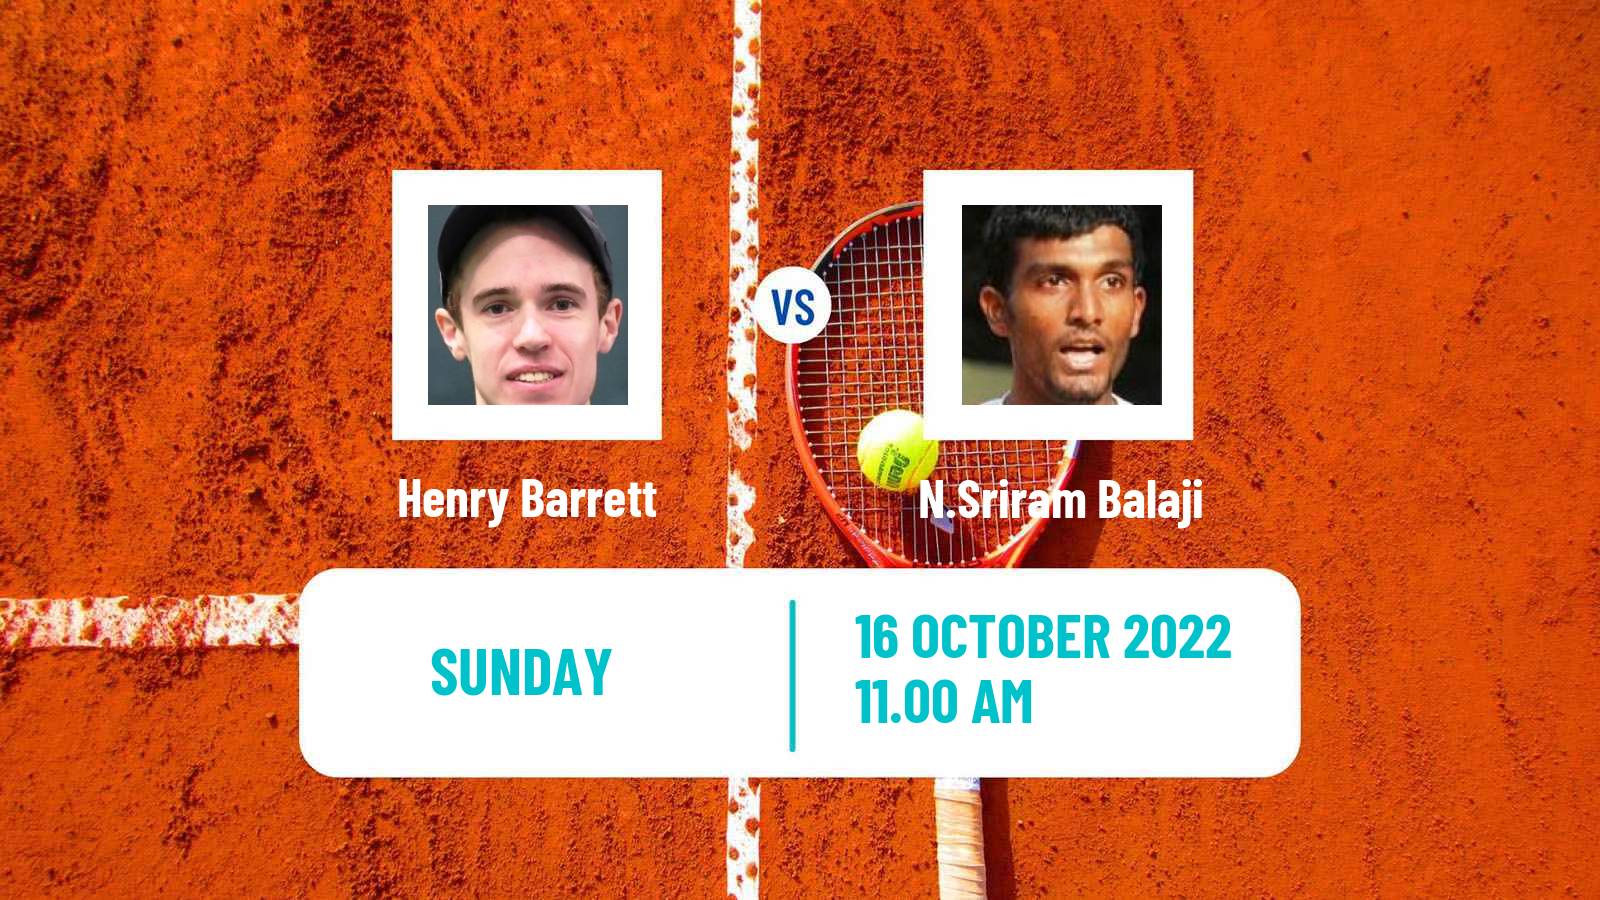 Tennis ATP Challenger Henry Barrett - N.Sriram Balaji